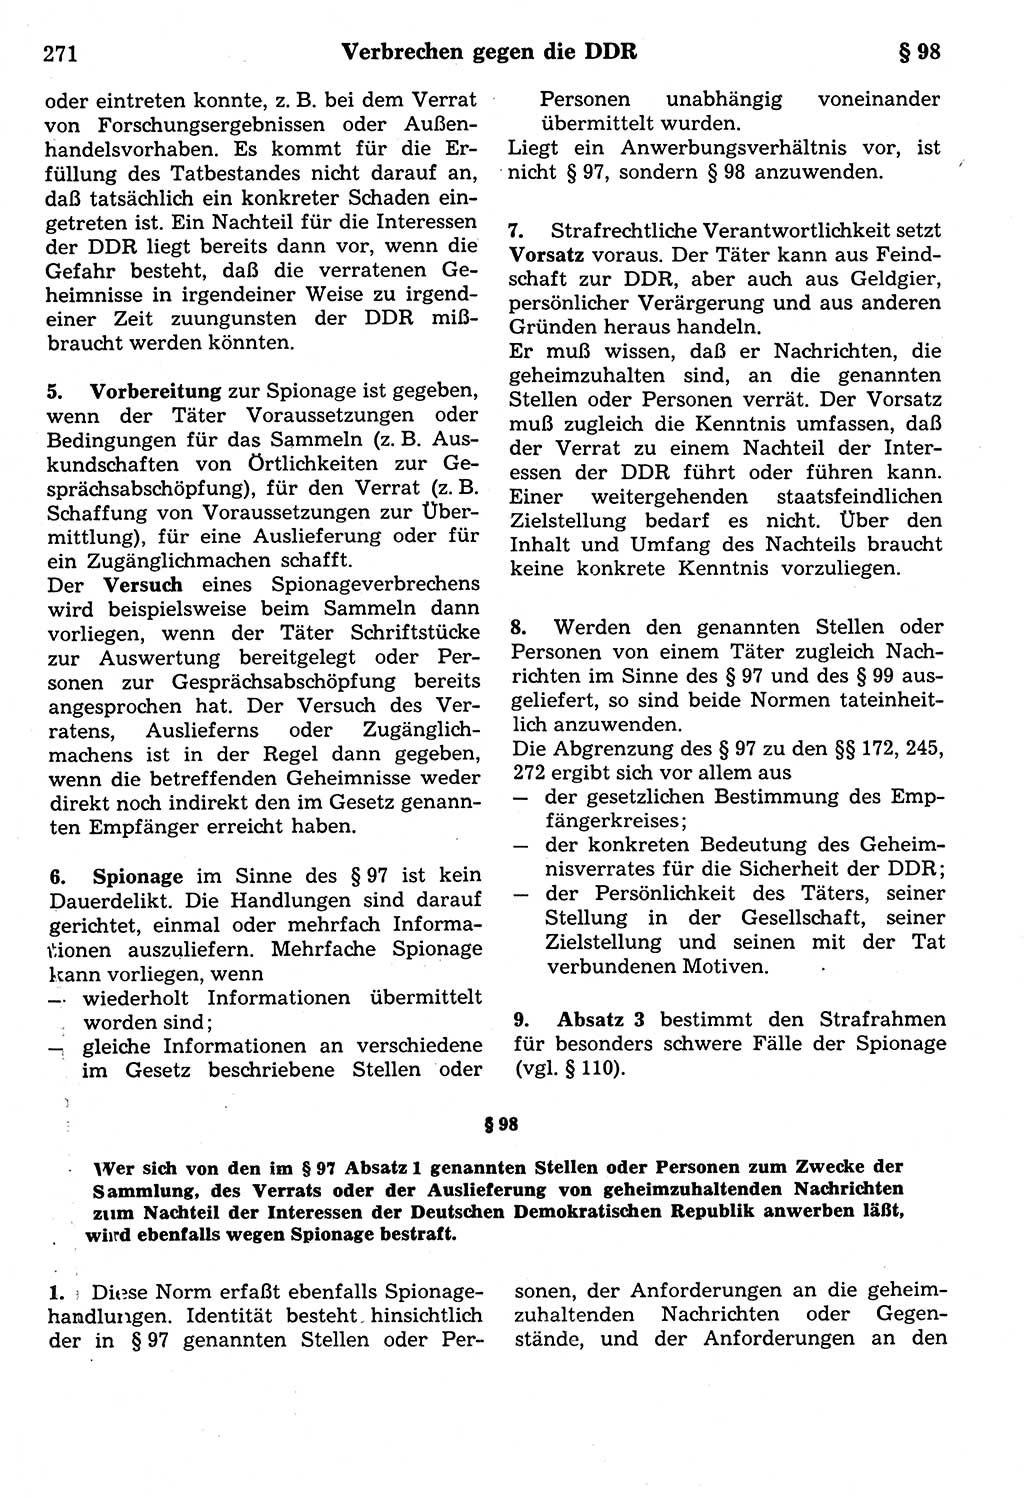 Strafrecht der Deutschen Demokratischen Republik (DDR), Kommentar zum Strafgesetzbuch (StGB) 1987, Seite 271 (Strafr. DDR Komm. StGB 1987, S. 271)